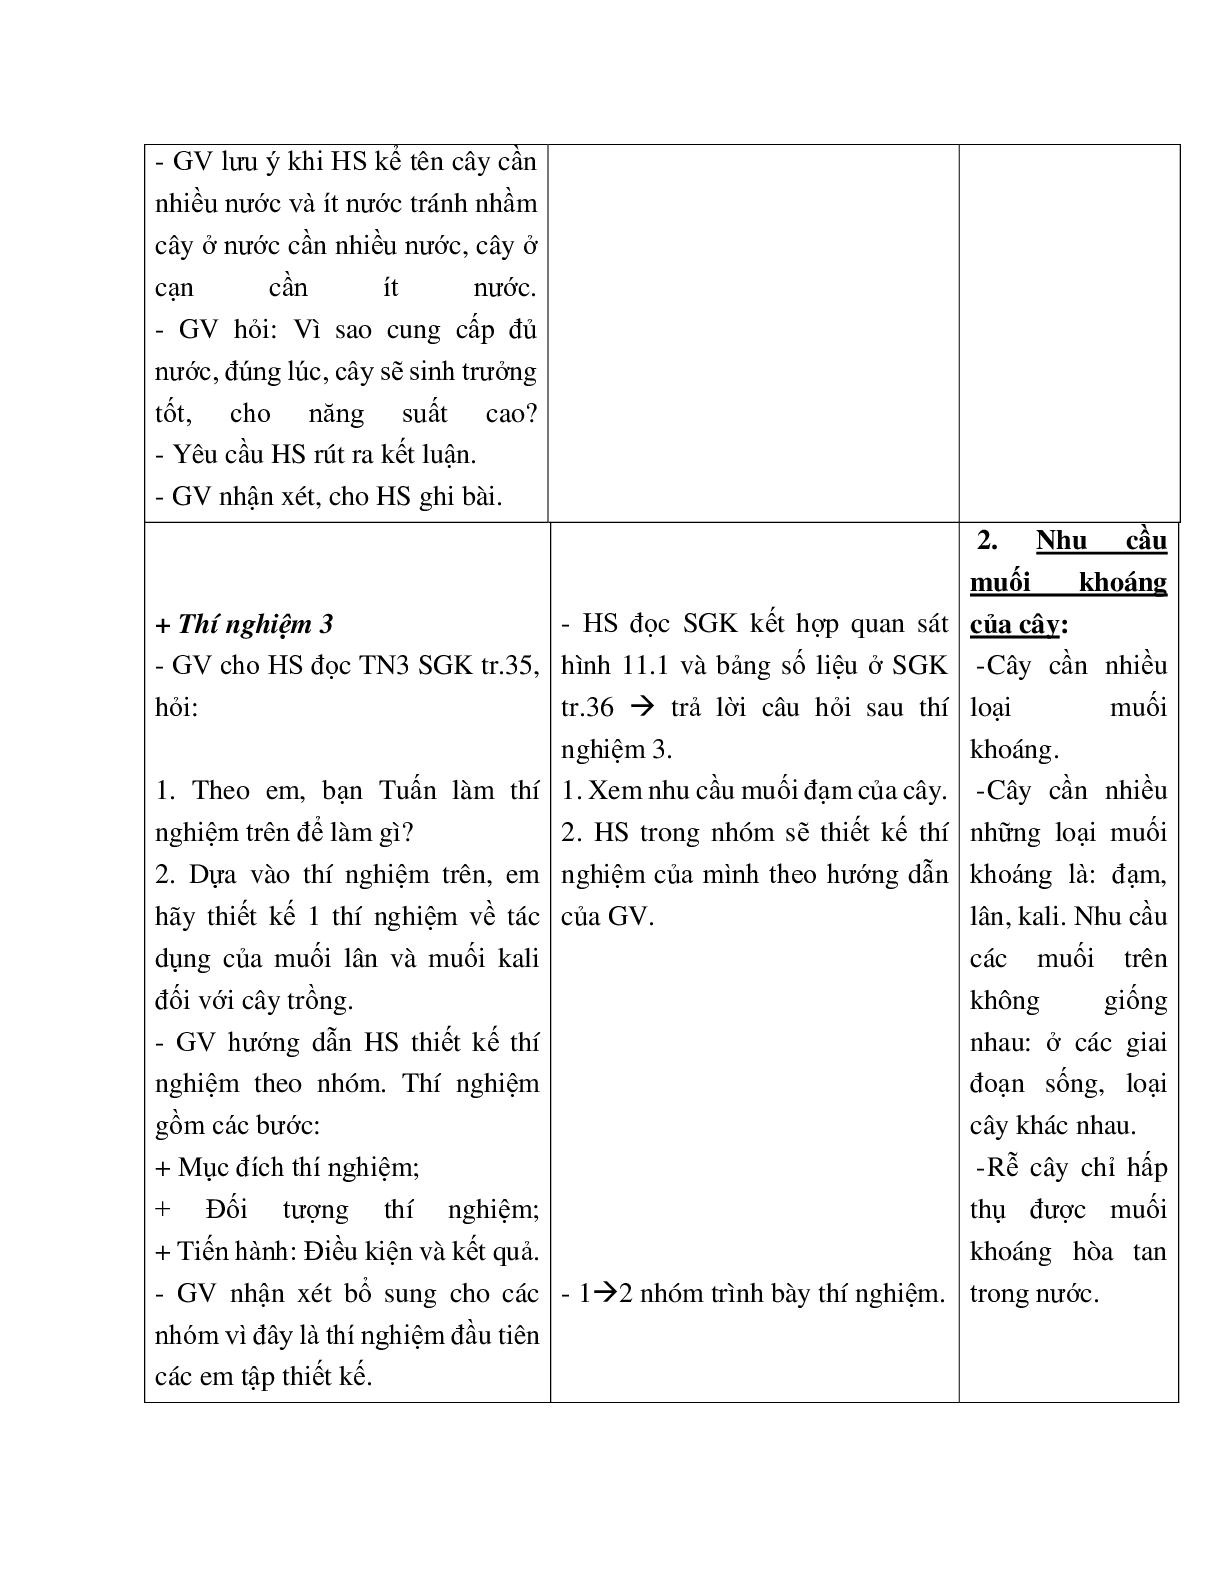 Giáo án Sinh học 6 Bài 11: Sự hút nước và muối khoáng của rễ mới nhất - CV5555 (trang 4)